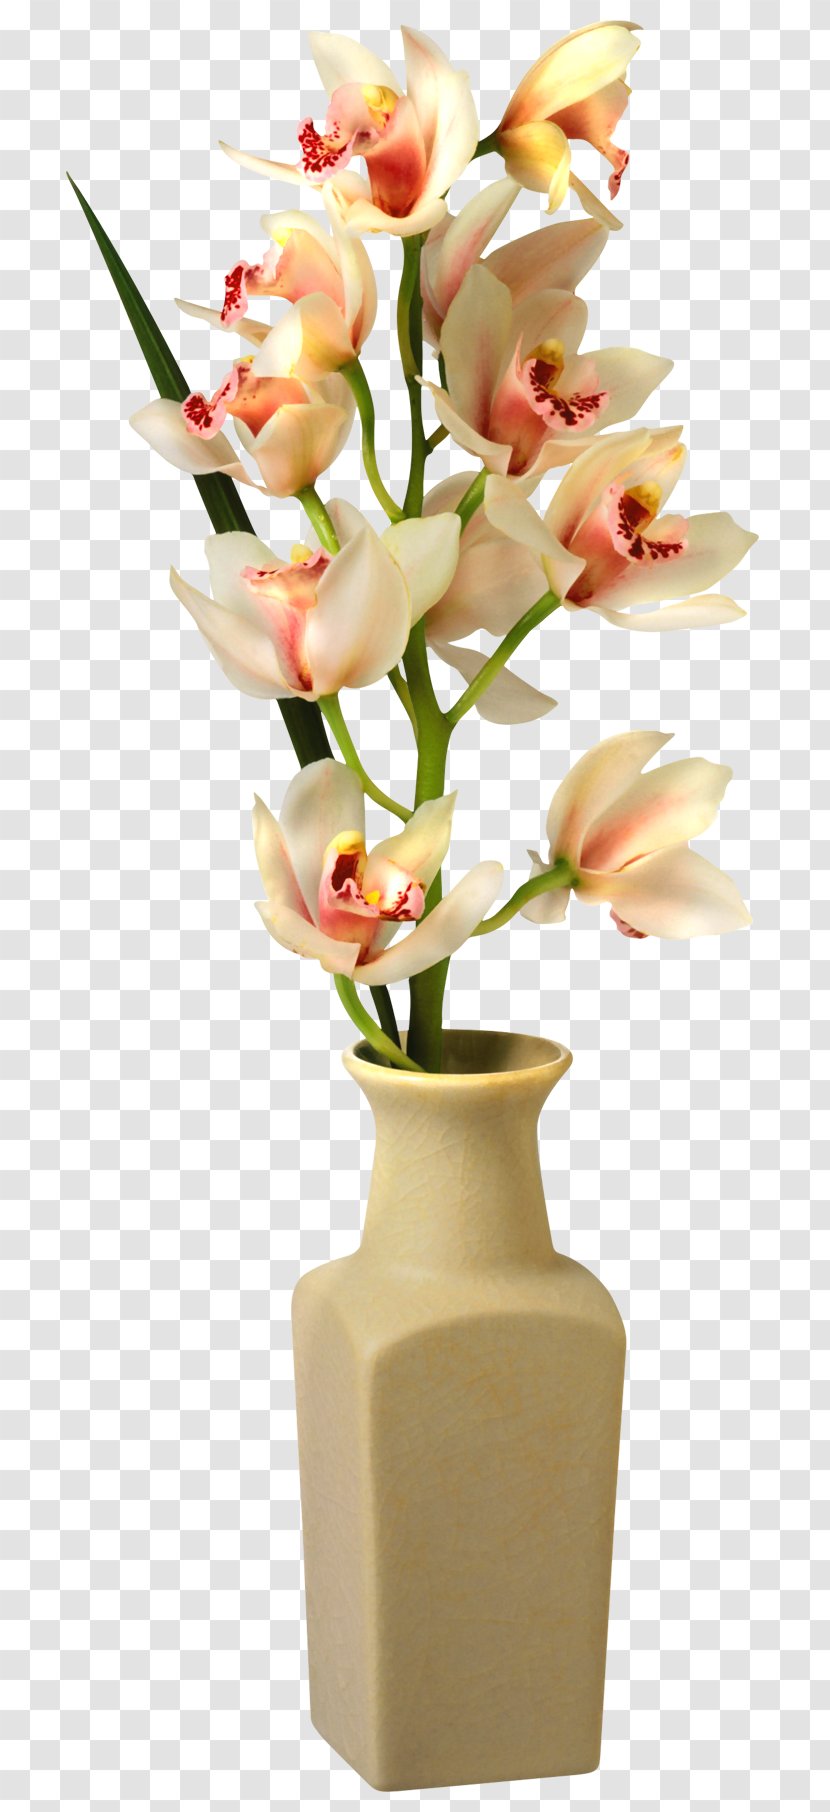 Vase Flower Clip Art - Orchid In Image Transparent PNG